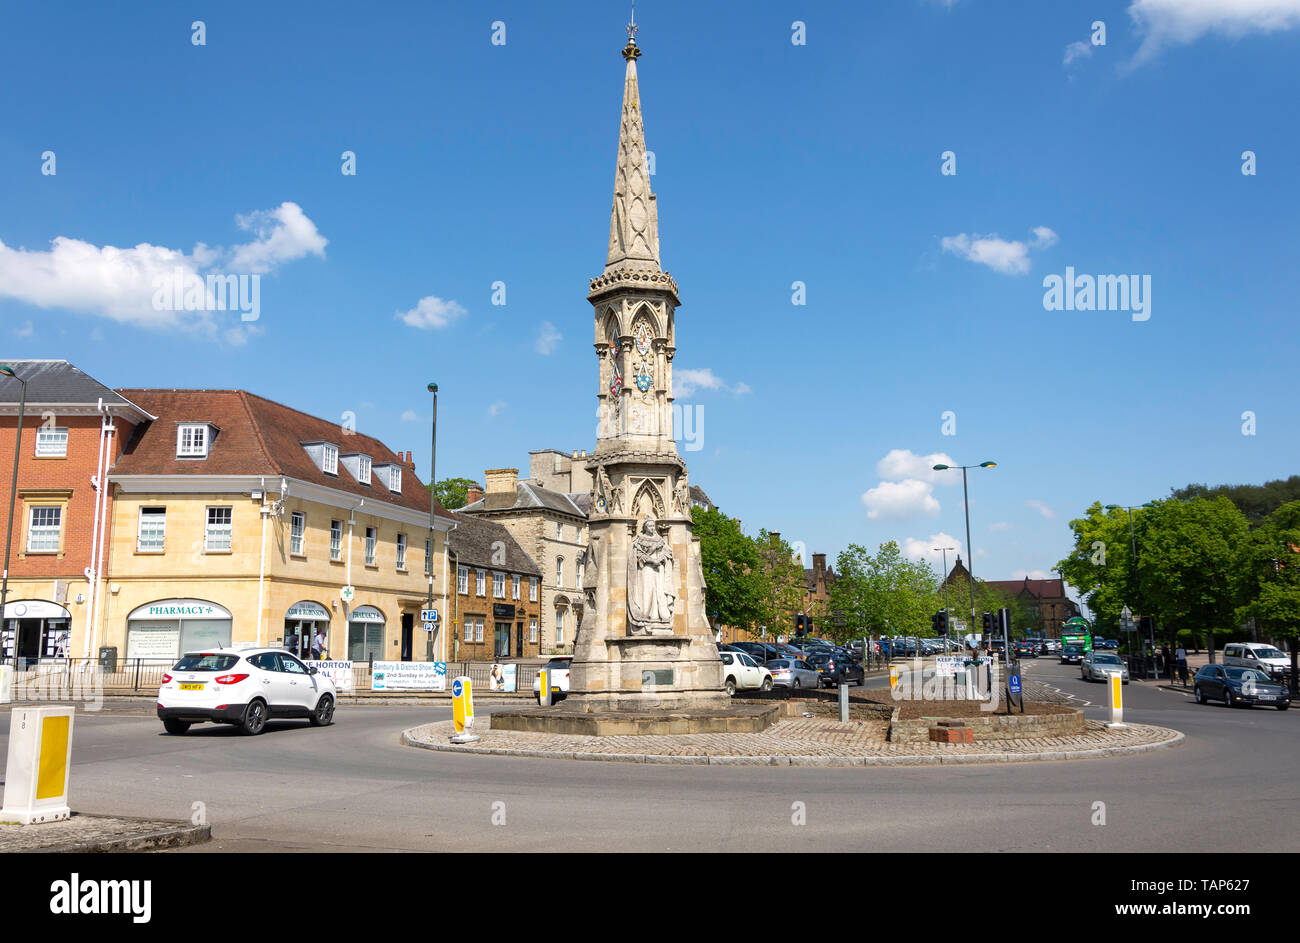 Banbury Cross, foire aux chevaux, Banbury, Oxfordshire, Angleterre, Royaume-Uni Banque D'Images